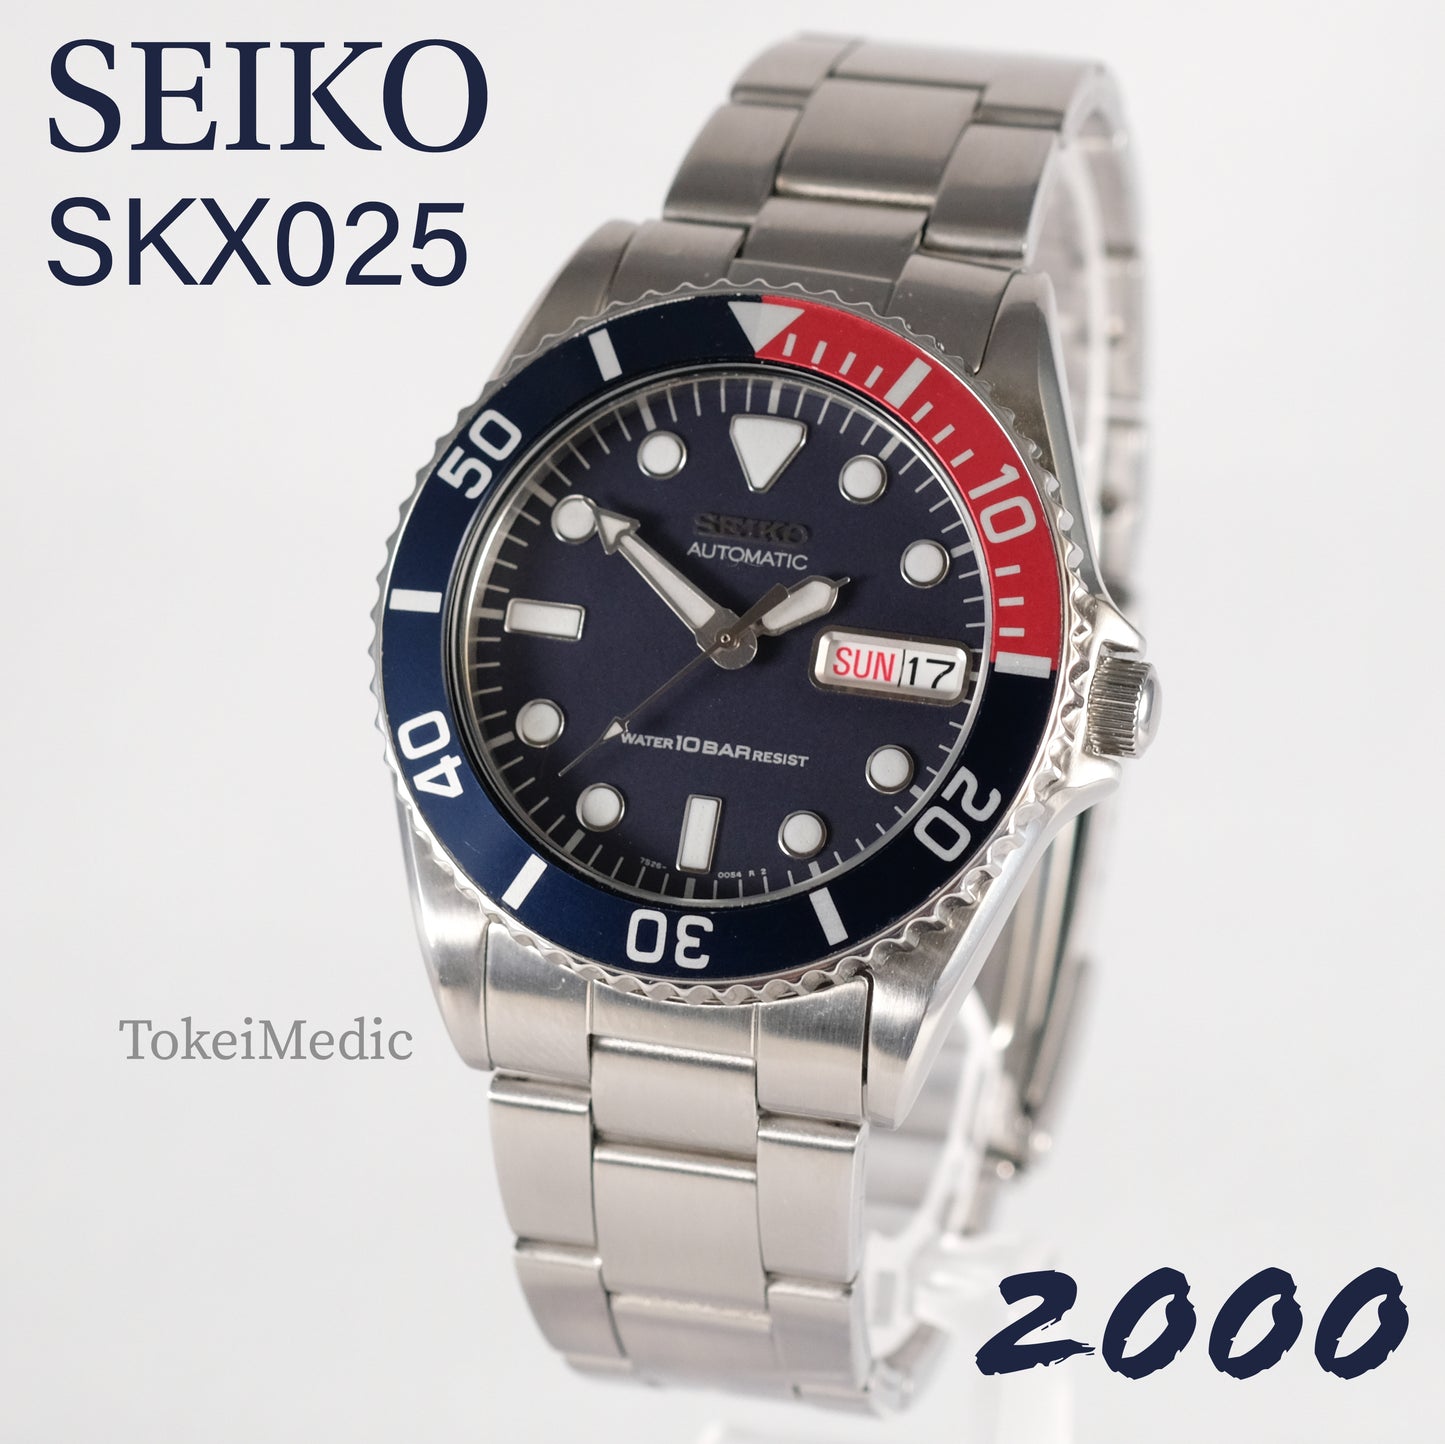 2000 Seiko SKX025 7S26-0050